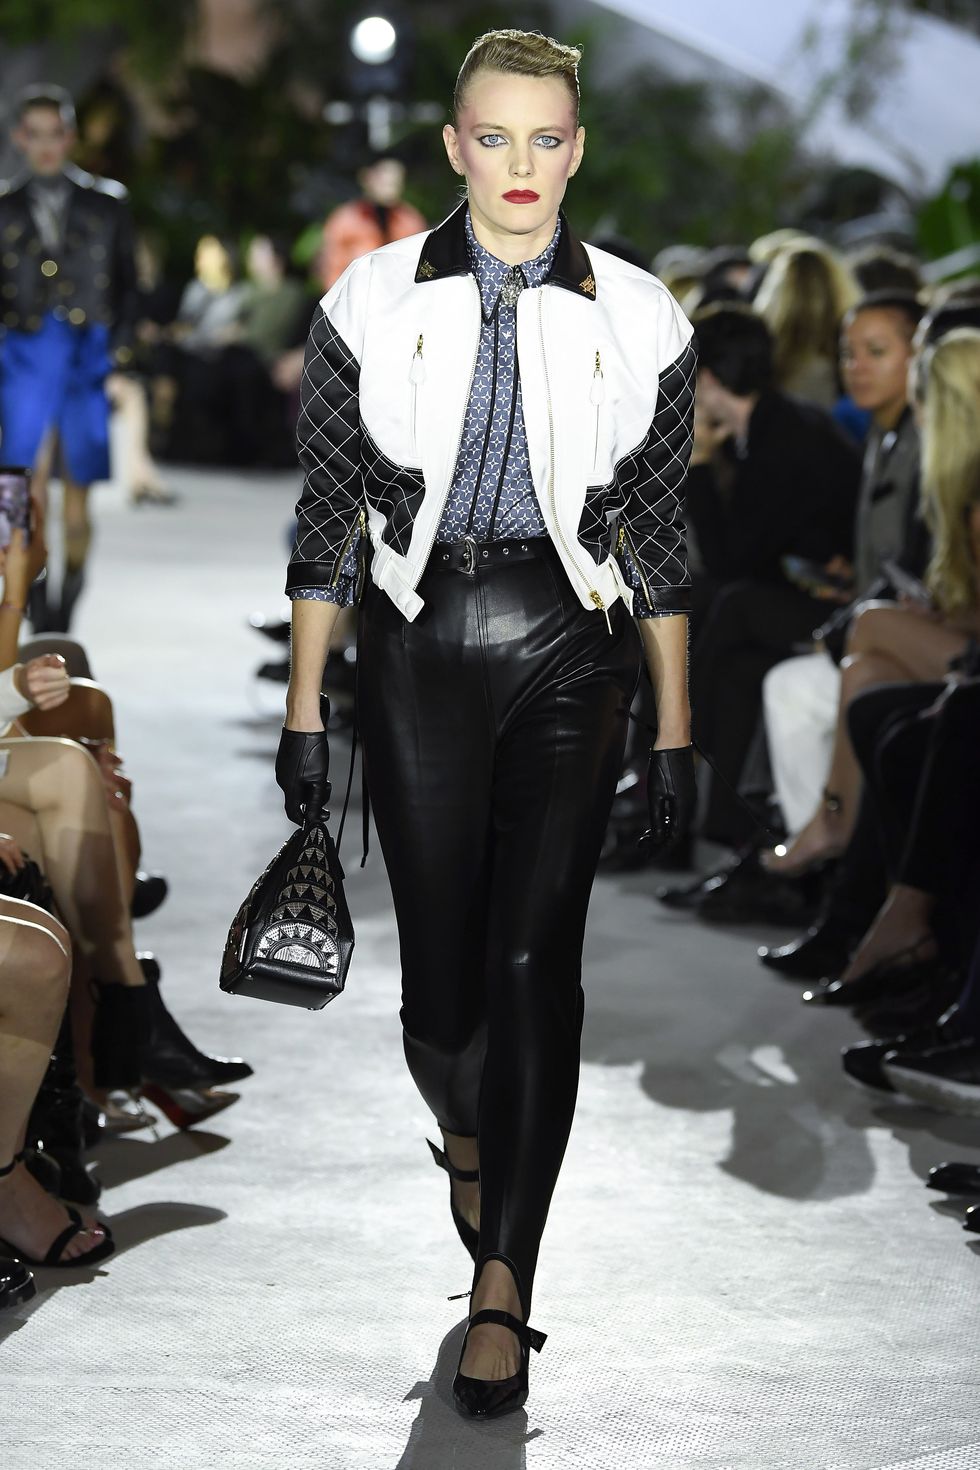 Louis Vuitton unveils 2020 Cruise Collection, a couture dialogue